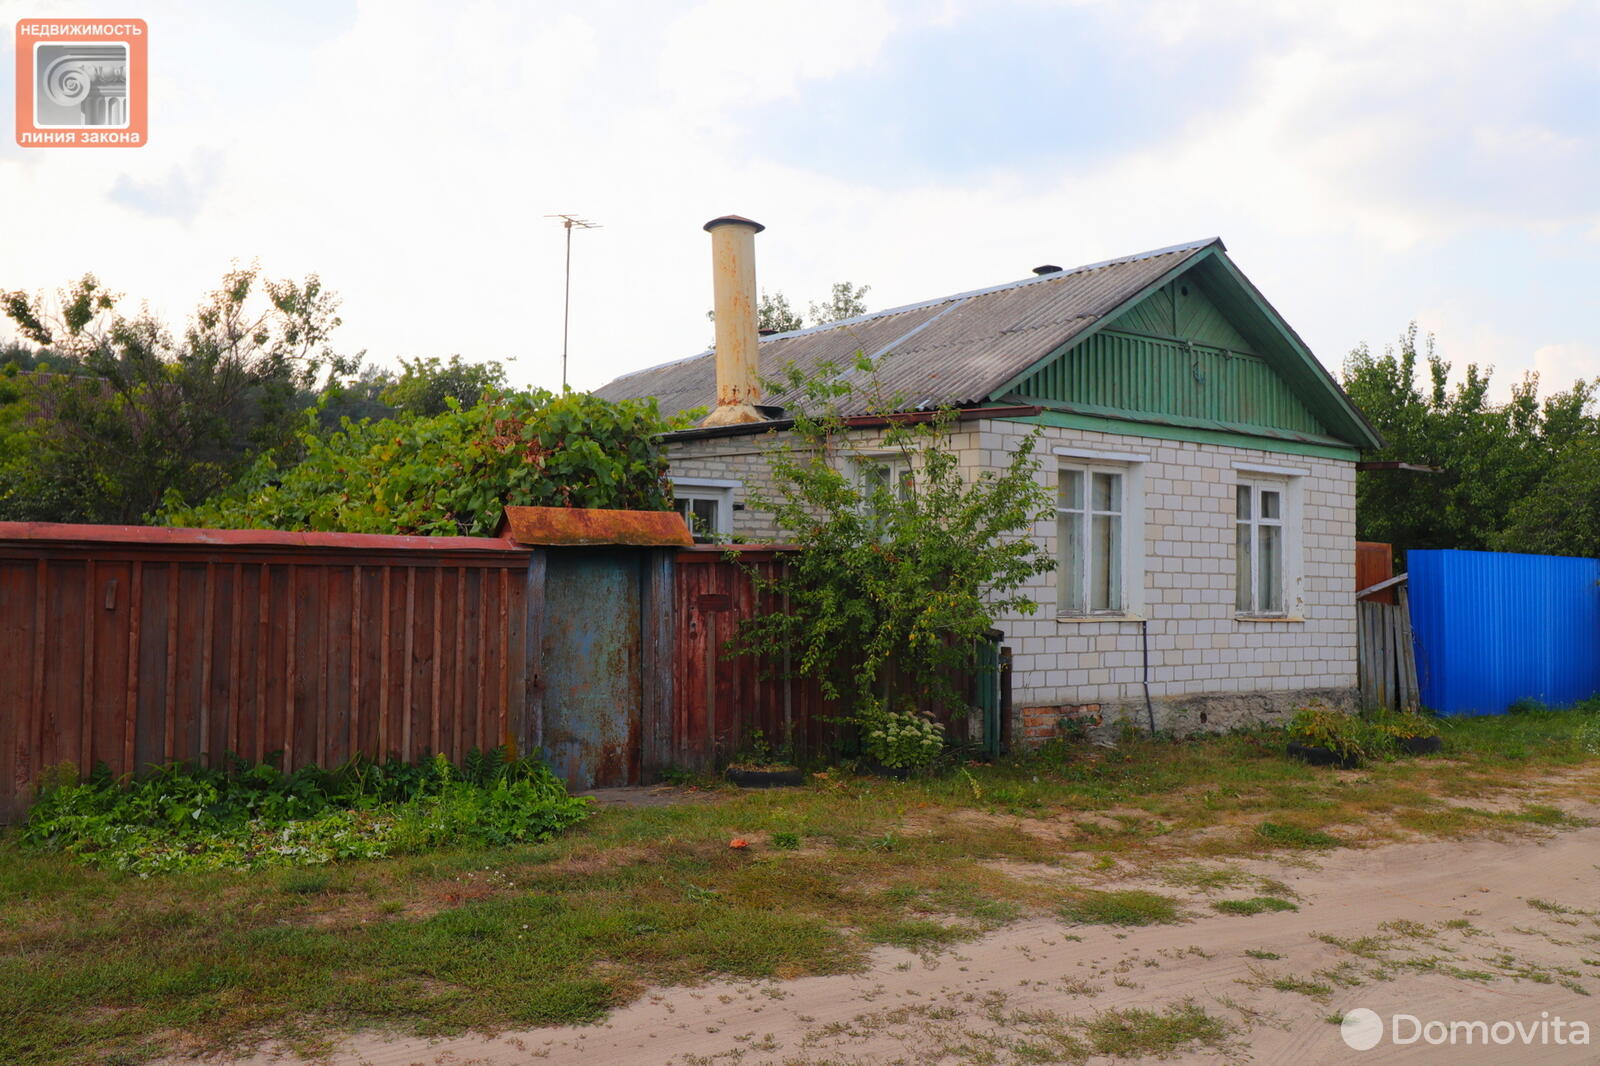 Продать 1-этажный дом в Добруше, Гомельская область ул. Крылова, 15000USD - фото 2